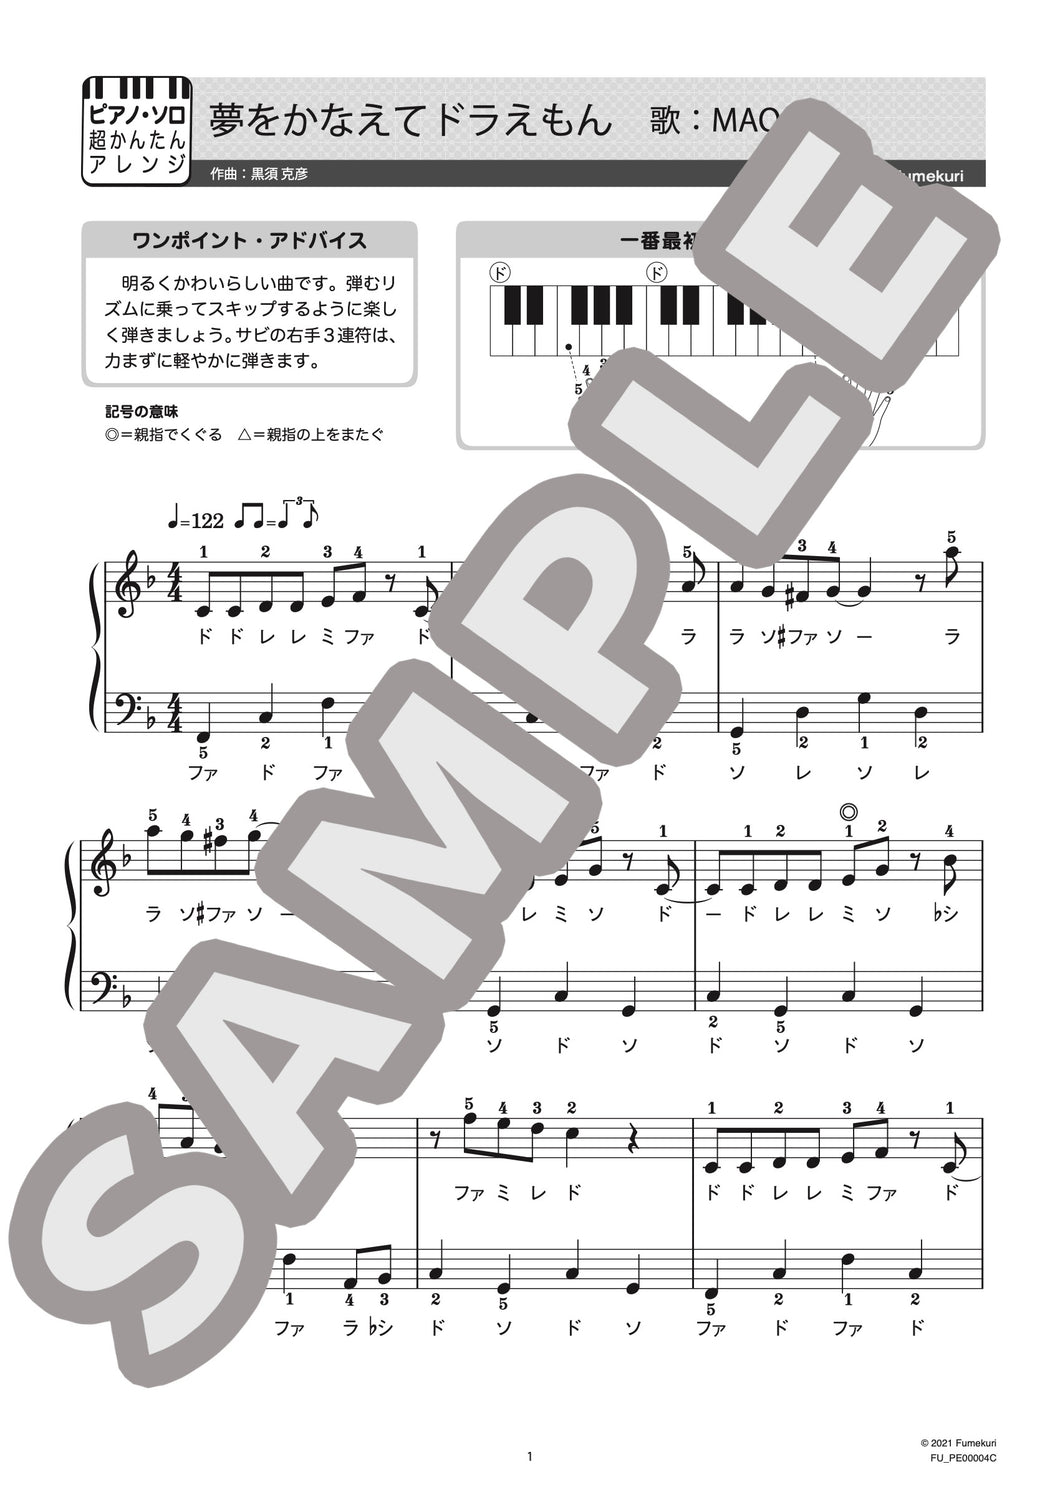 夢をかなえてドラえもん ピアノ ソロ 初級 Maoのダウンロード楽譜 Fumekuri フメクリ